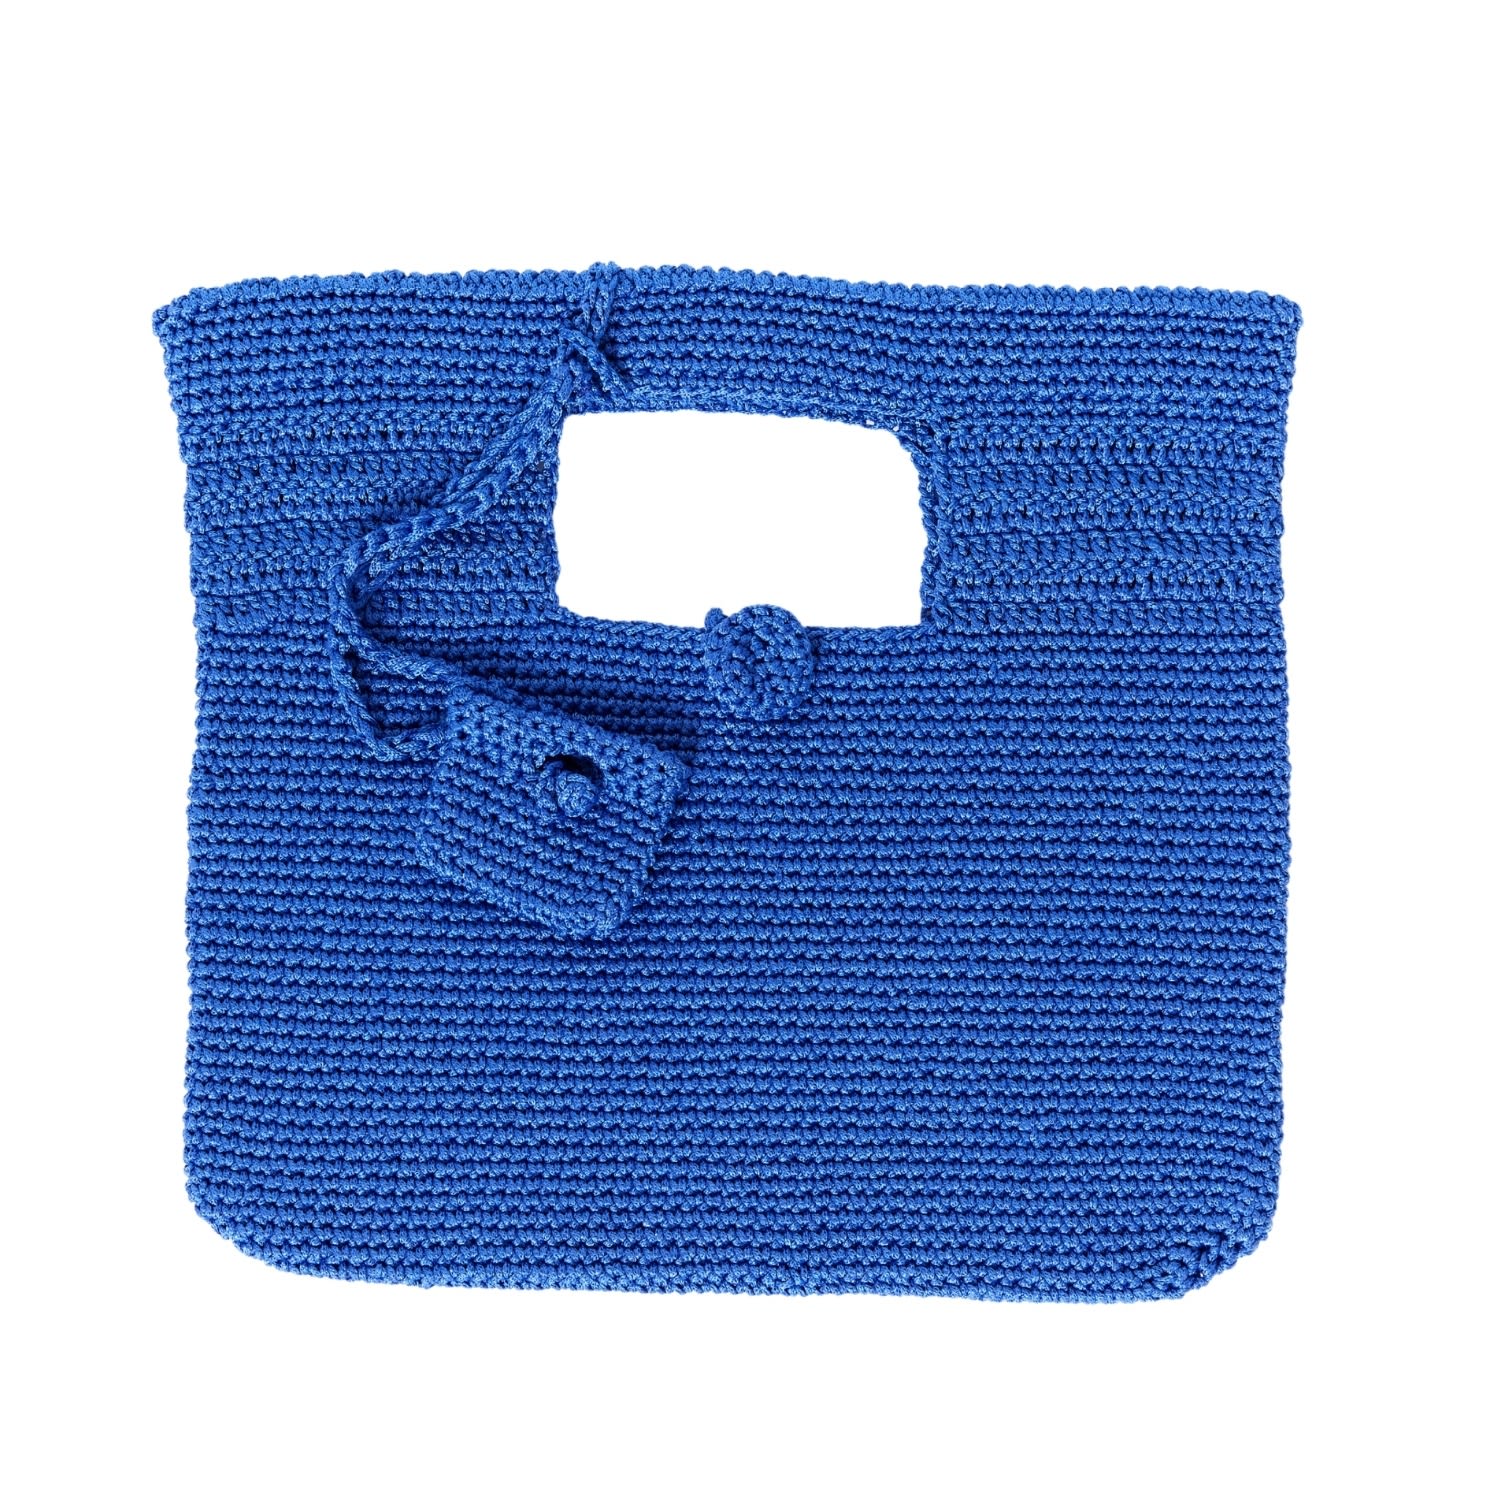 Women’s Santorini Crochet Bag In Sax Blue N’onat